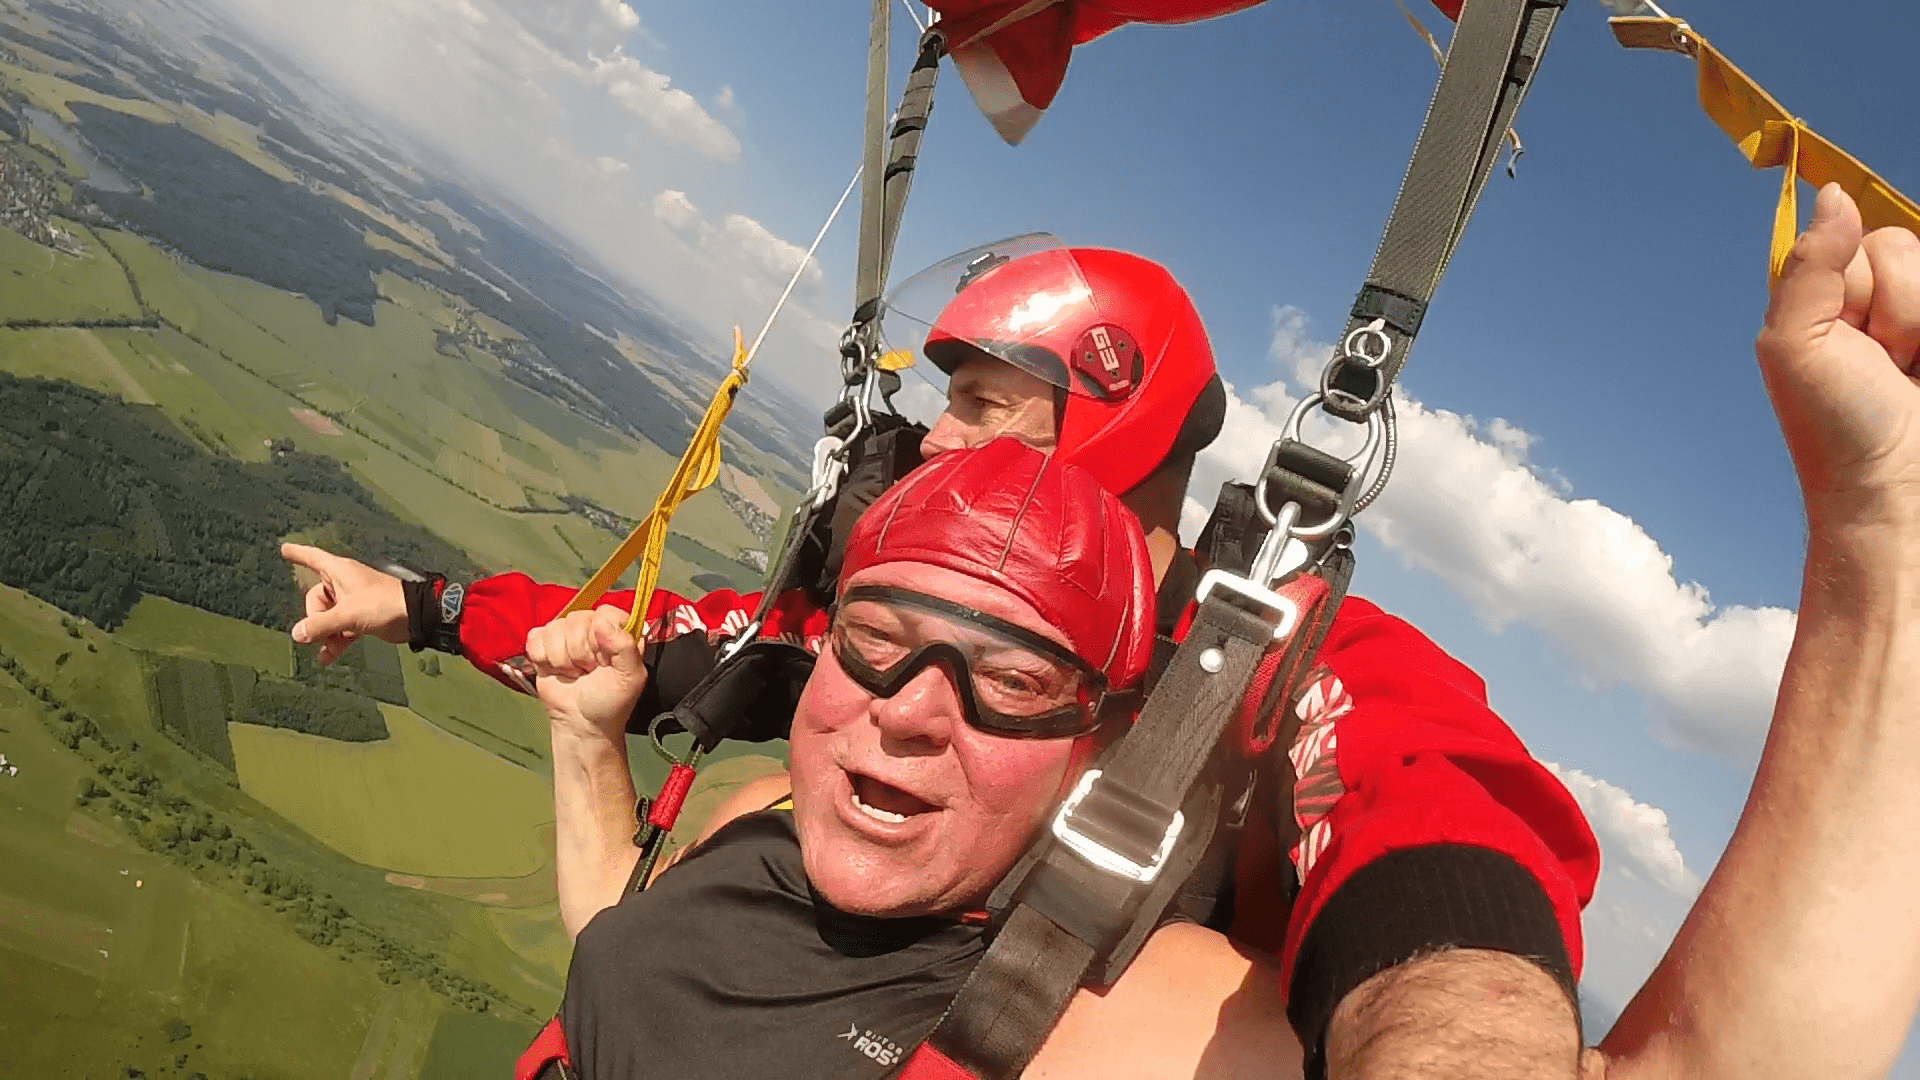 Tandemsprung Kunde lenkt Fallschirm selbst